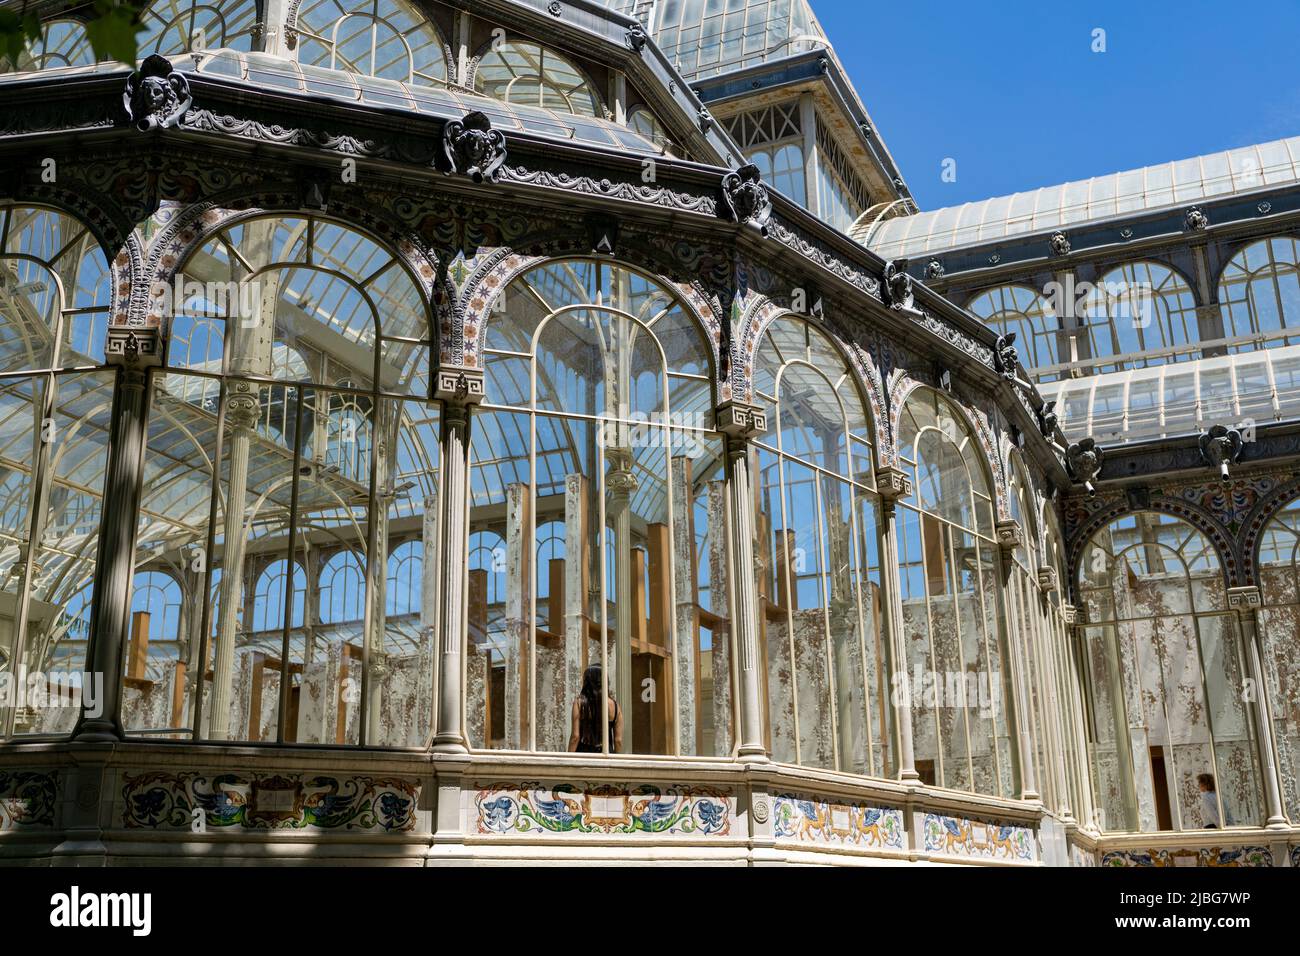 Der Glaspalast im El Retiro Park in Madrid vom Architekten Ricardo Velázquez Bosco. Ein UNESCO-Weltkulturerbe. Im Besitz des Reina Sofía Museums. Stockfoto